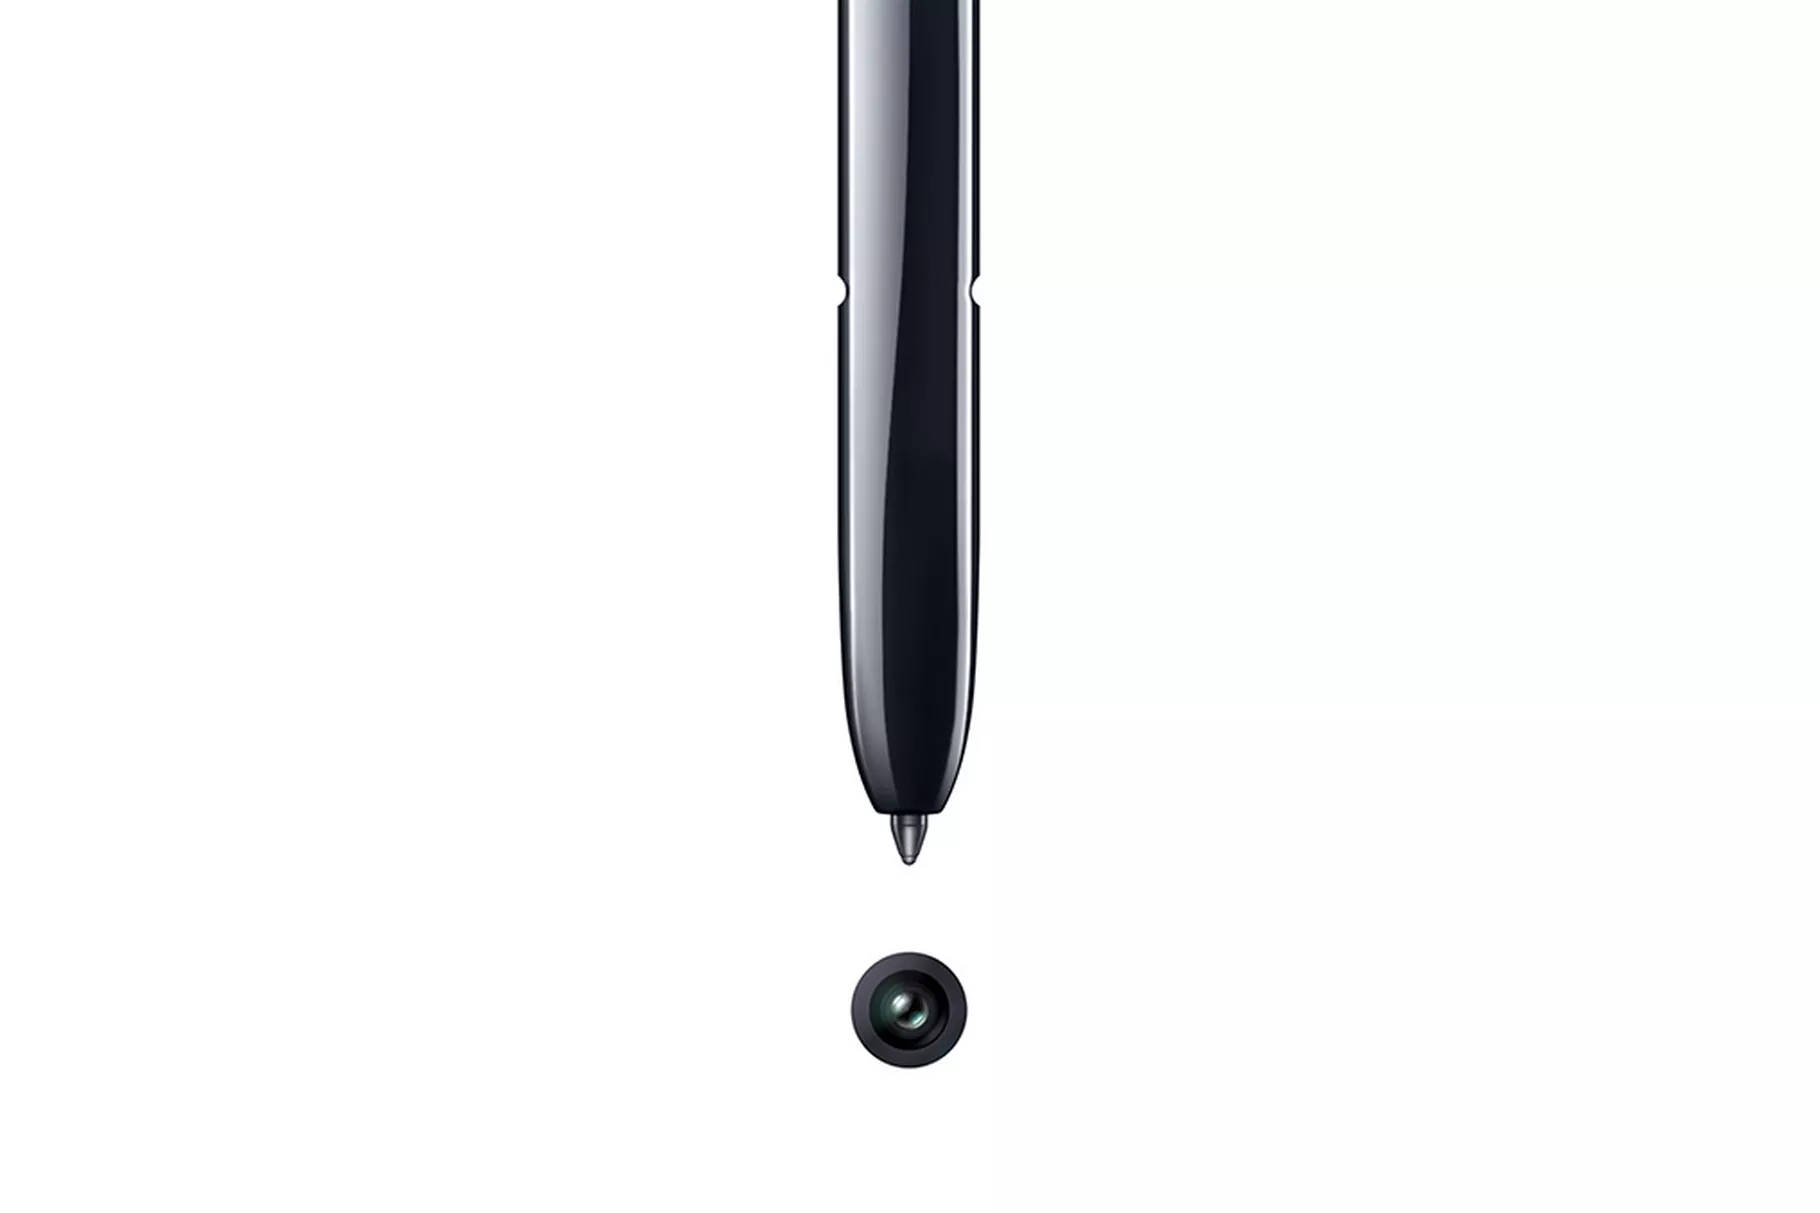 Samsung Galaxy Note 10 kiedy premiera data premiery Unpacked smartfony plotki przecieki wycieki specyfikacja techniczna